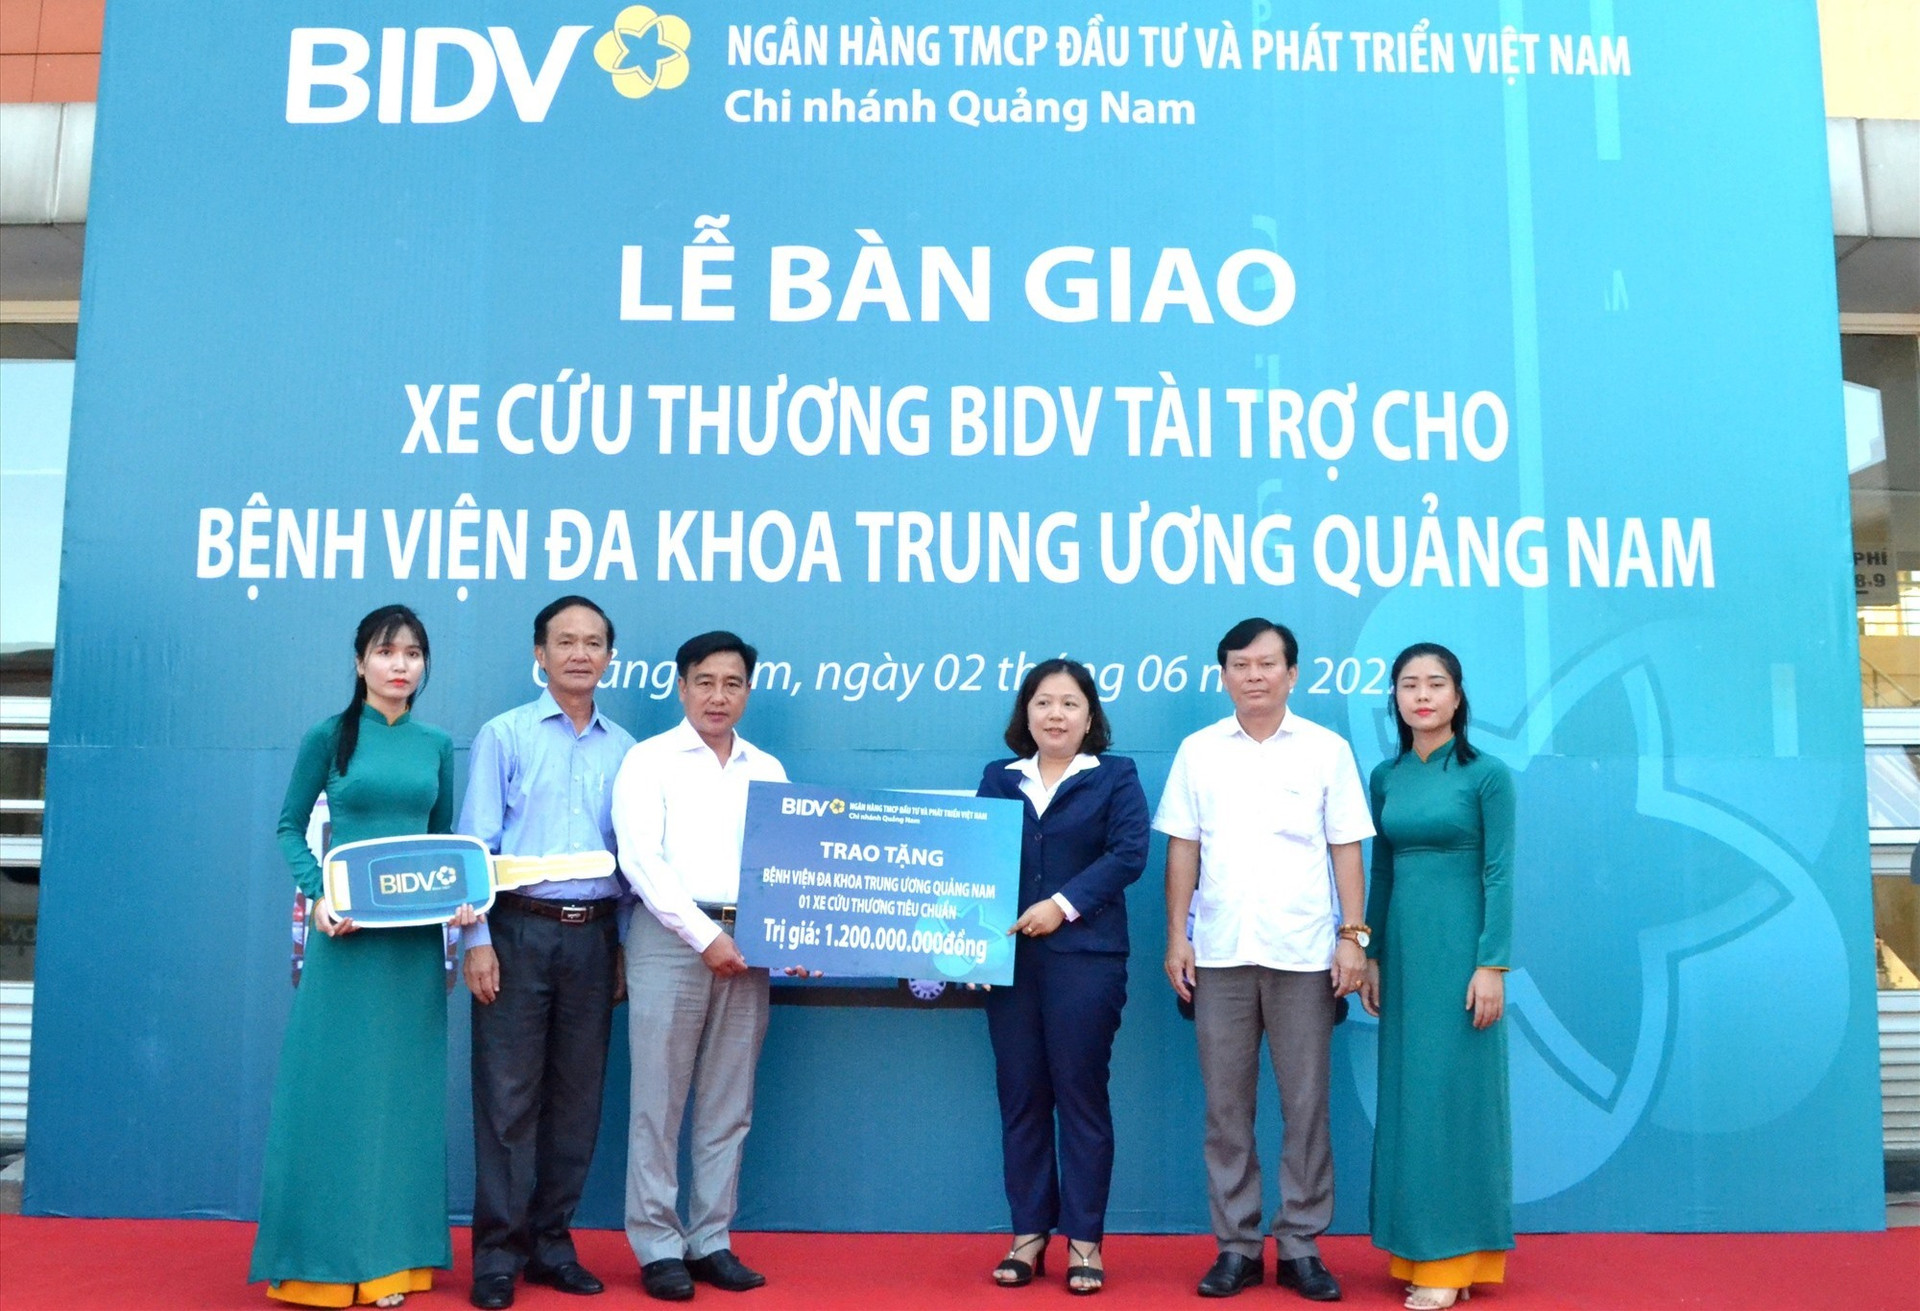 BIDV Quảng Nam trao tặng xe cứu thương trị giá 1,2 tỷ đồngcho Bệnh viên đa khoa Trung ương Quảng Nam. Ảnh: Q.VIỆT